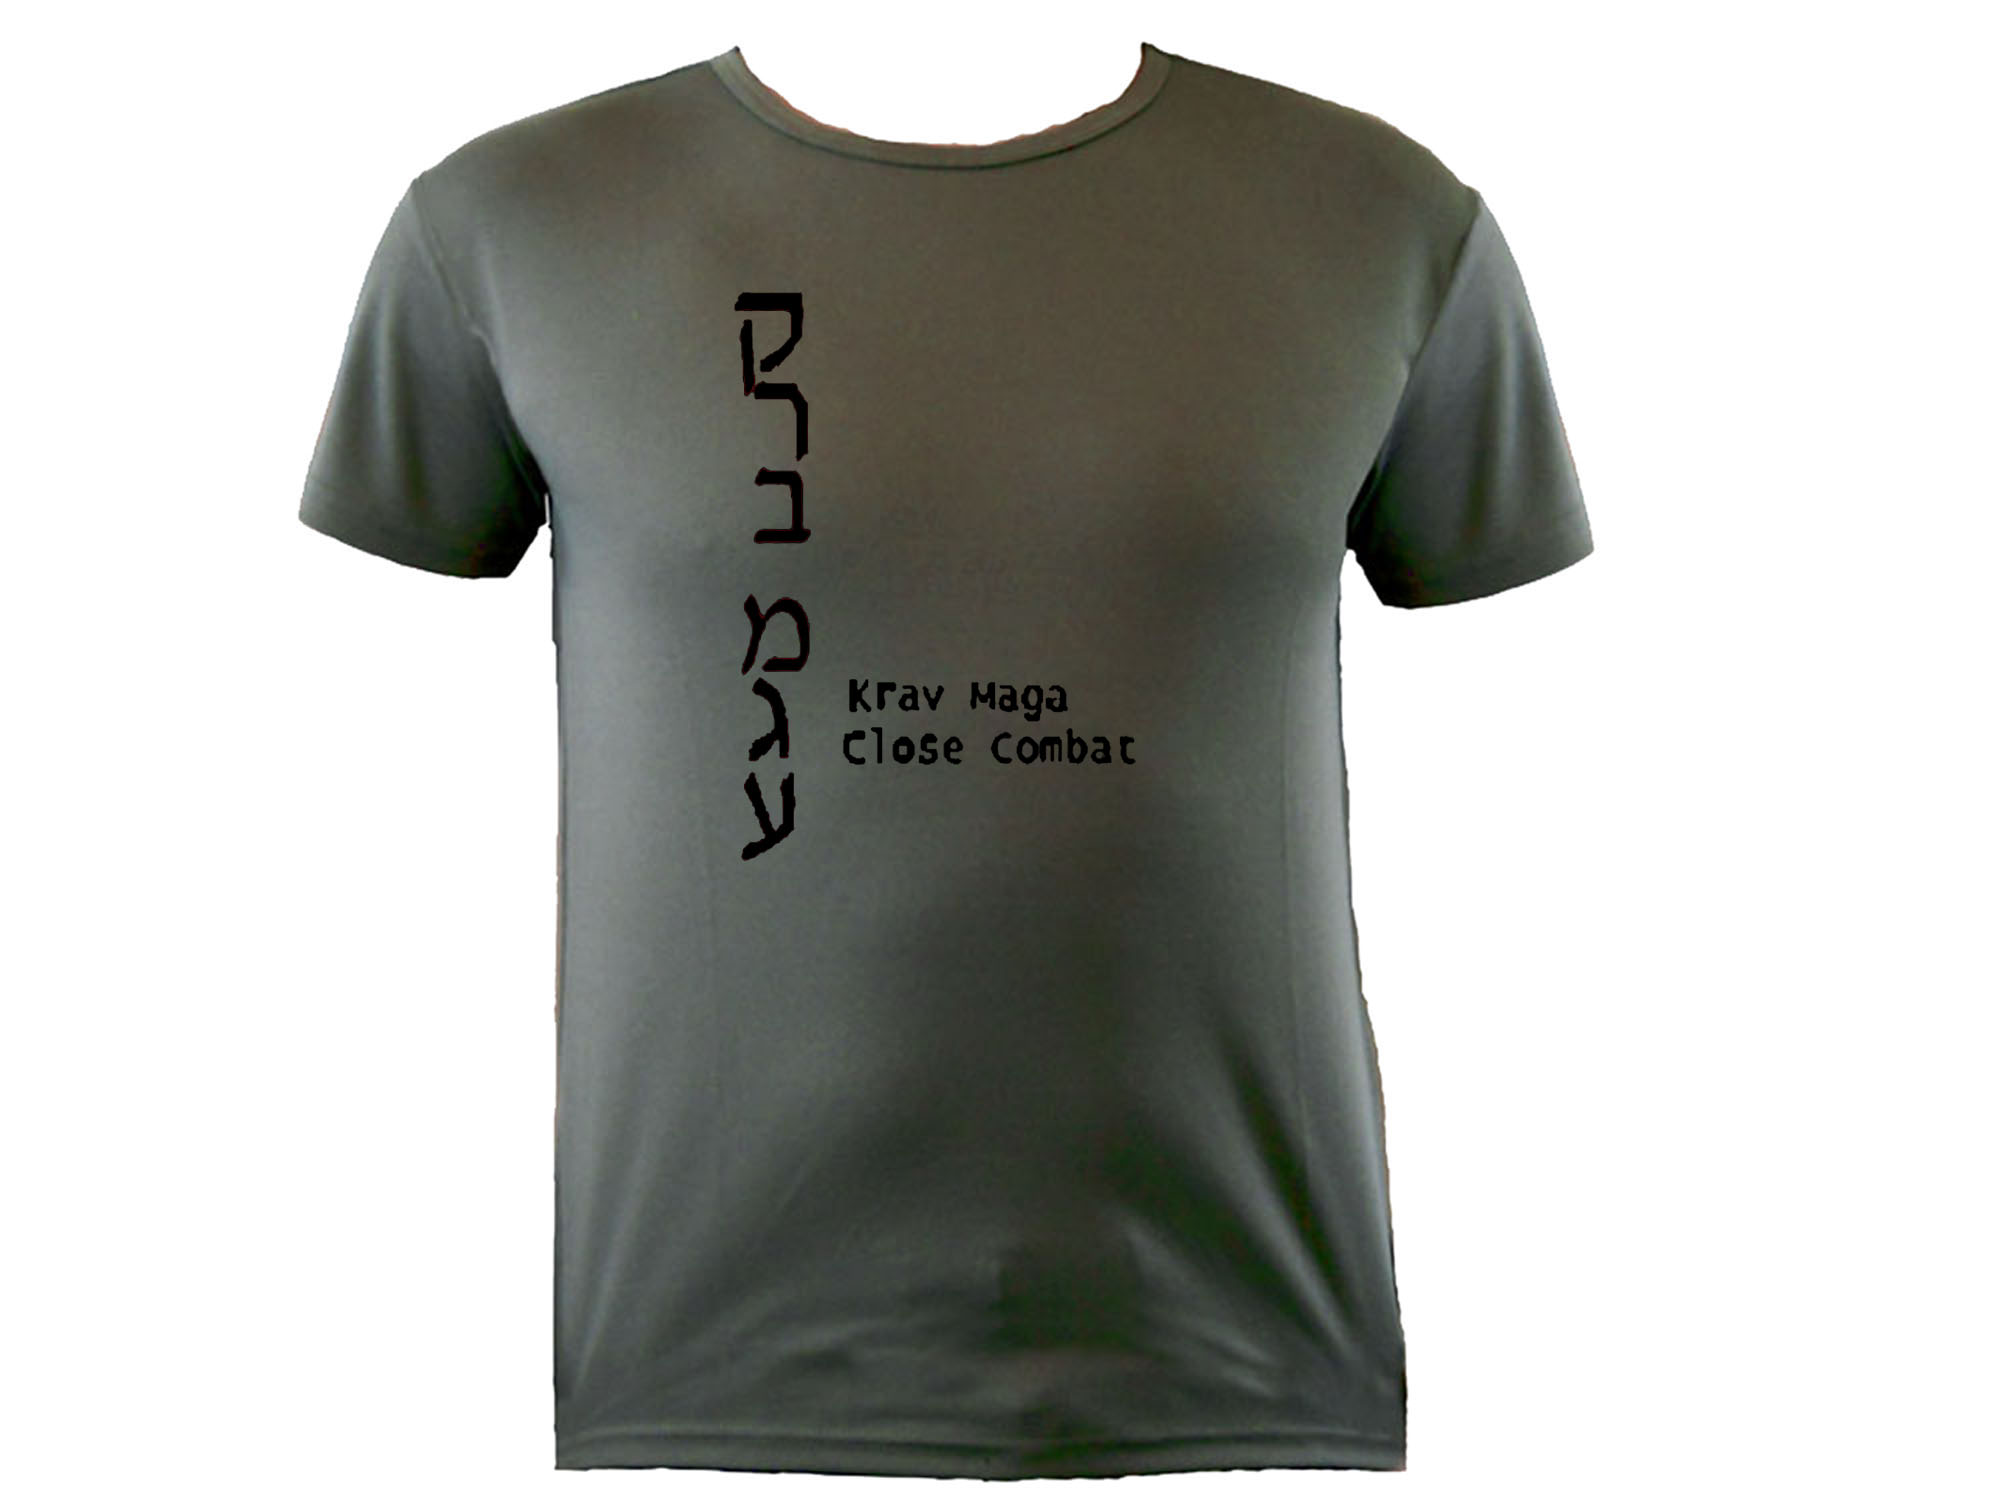 Krav Maga English/Hebrew sweat proof (dri fit) t-shirt